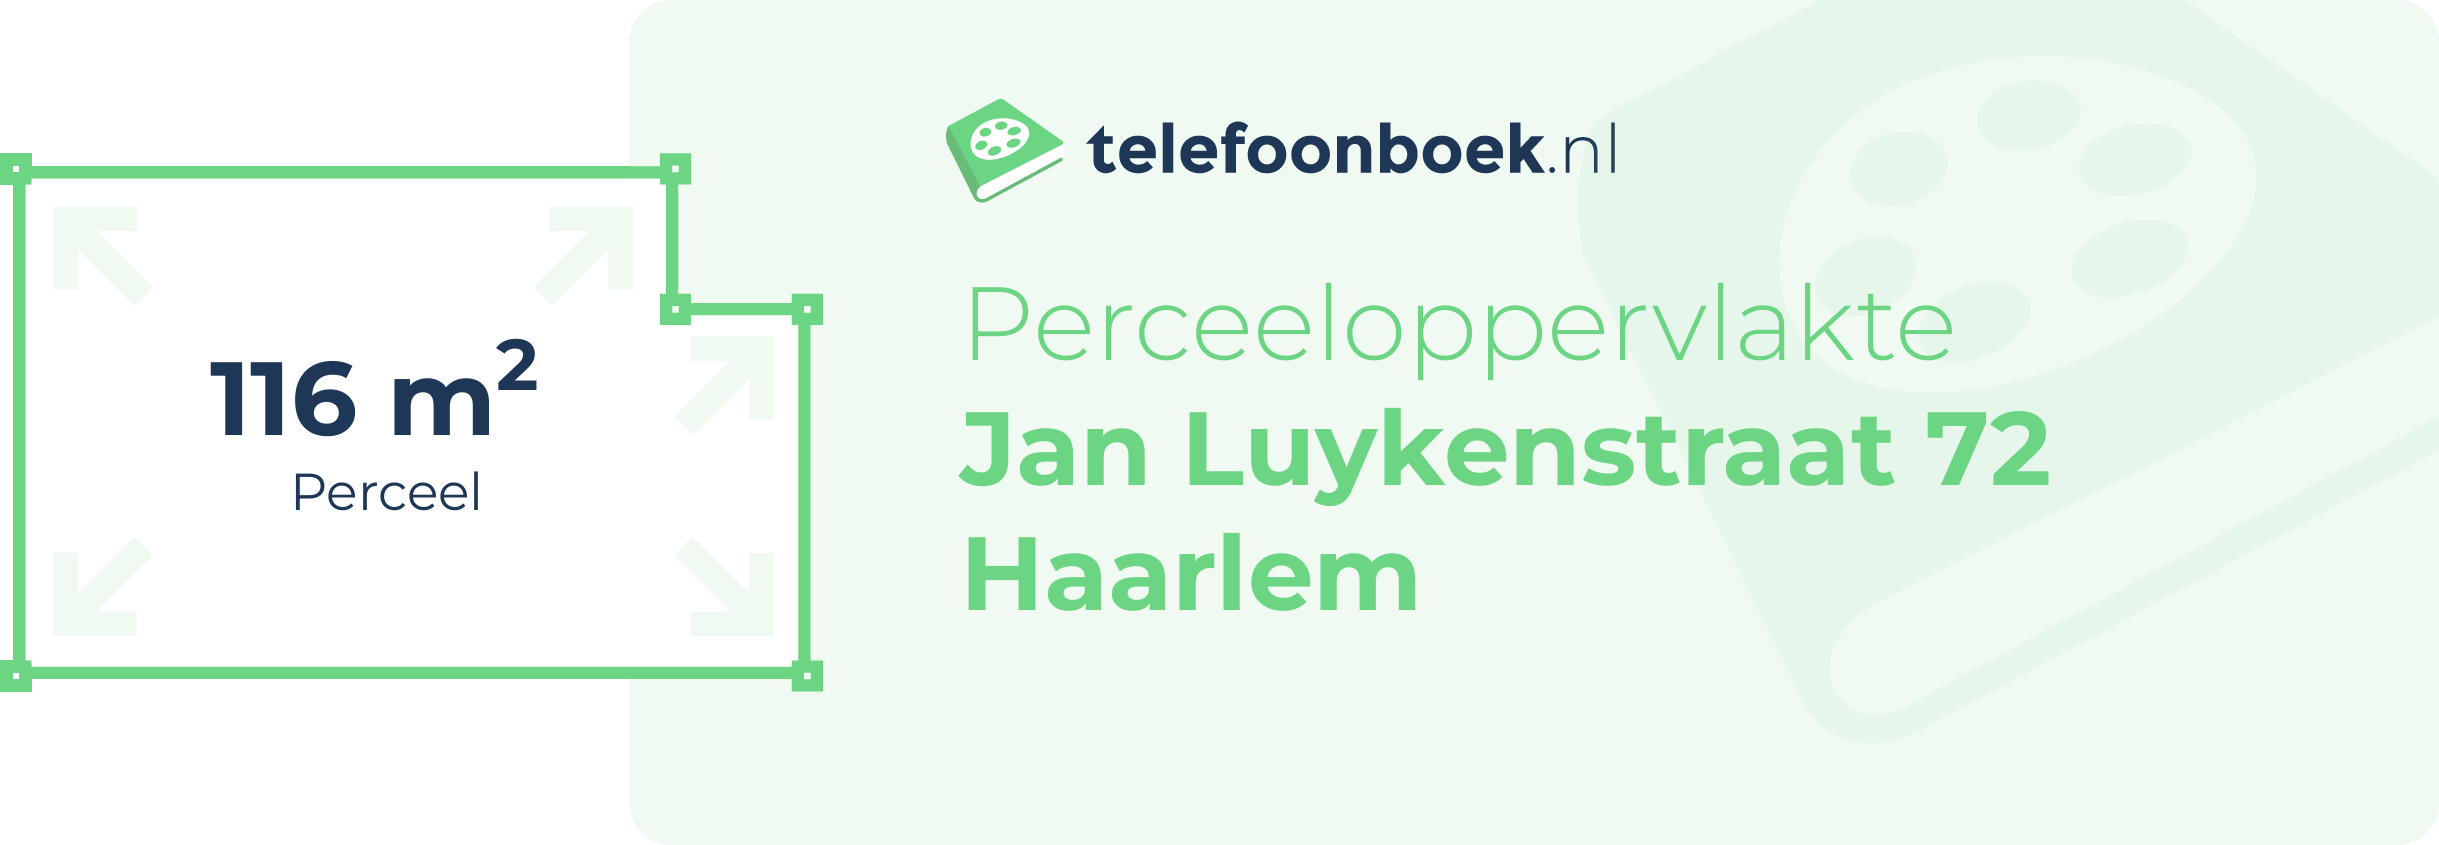 Perceeloppervlakte Jan Luykenstraat 72 Haarlem